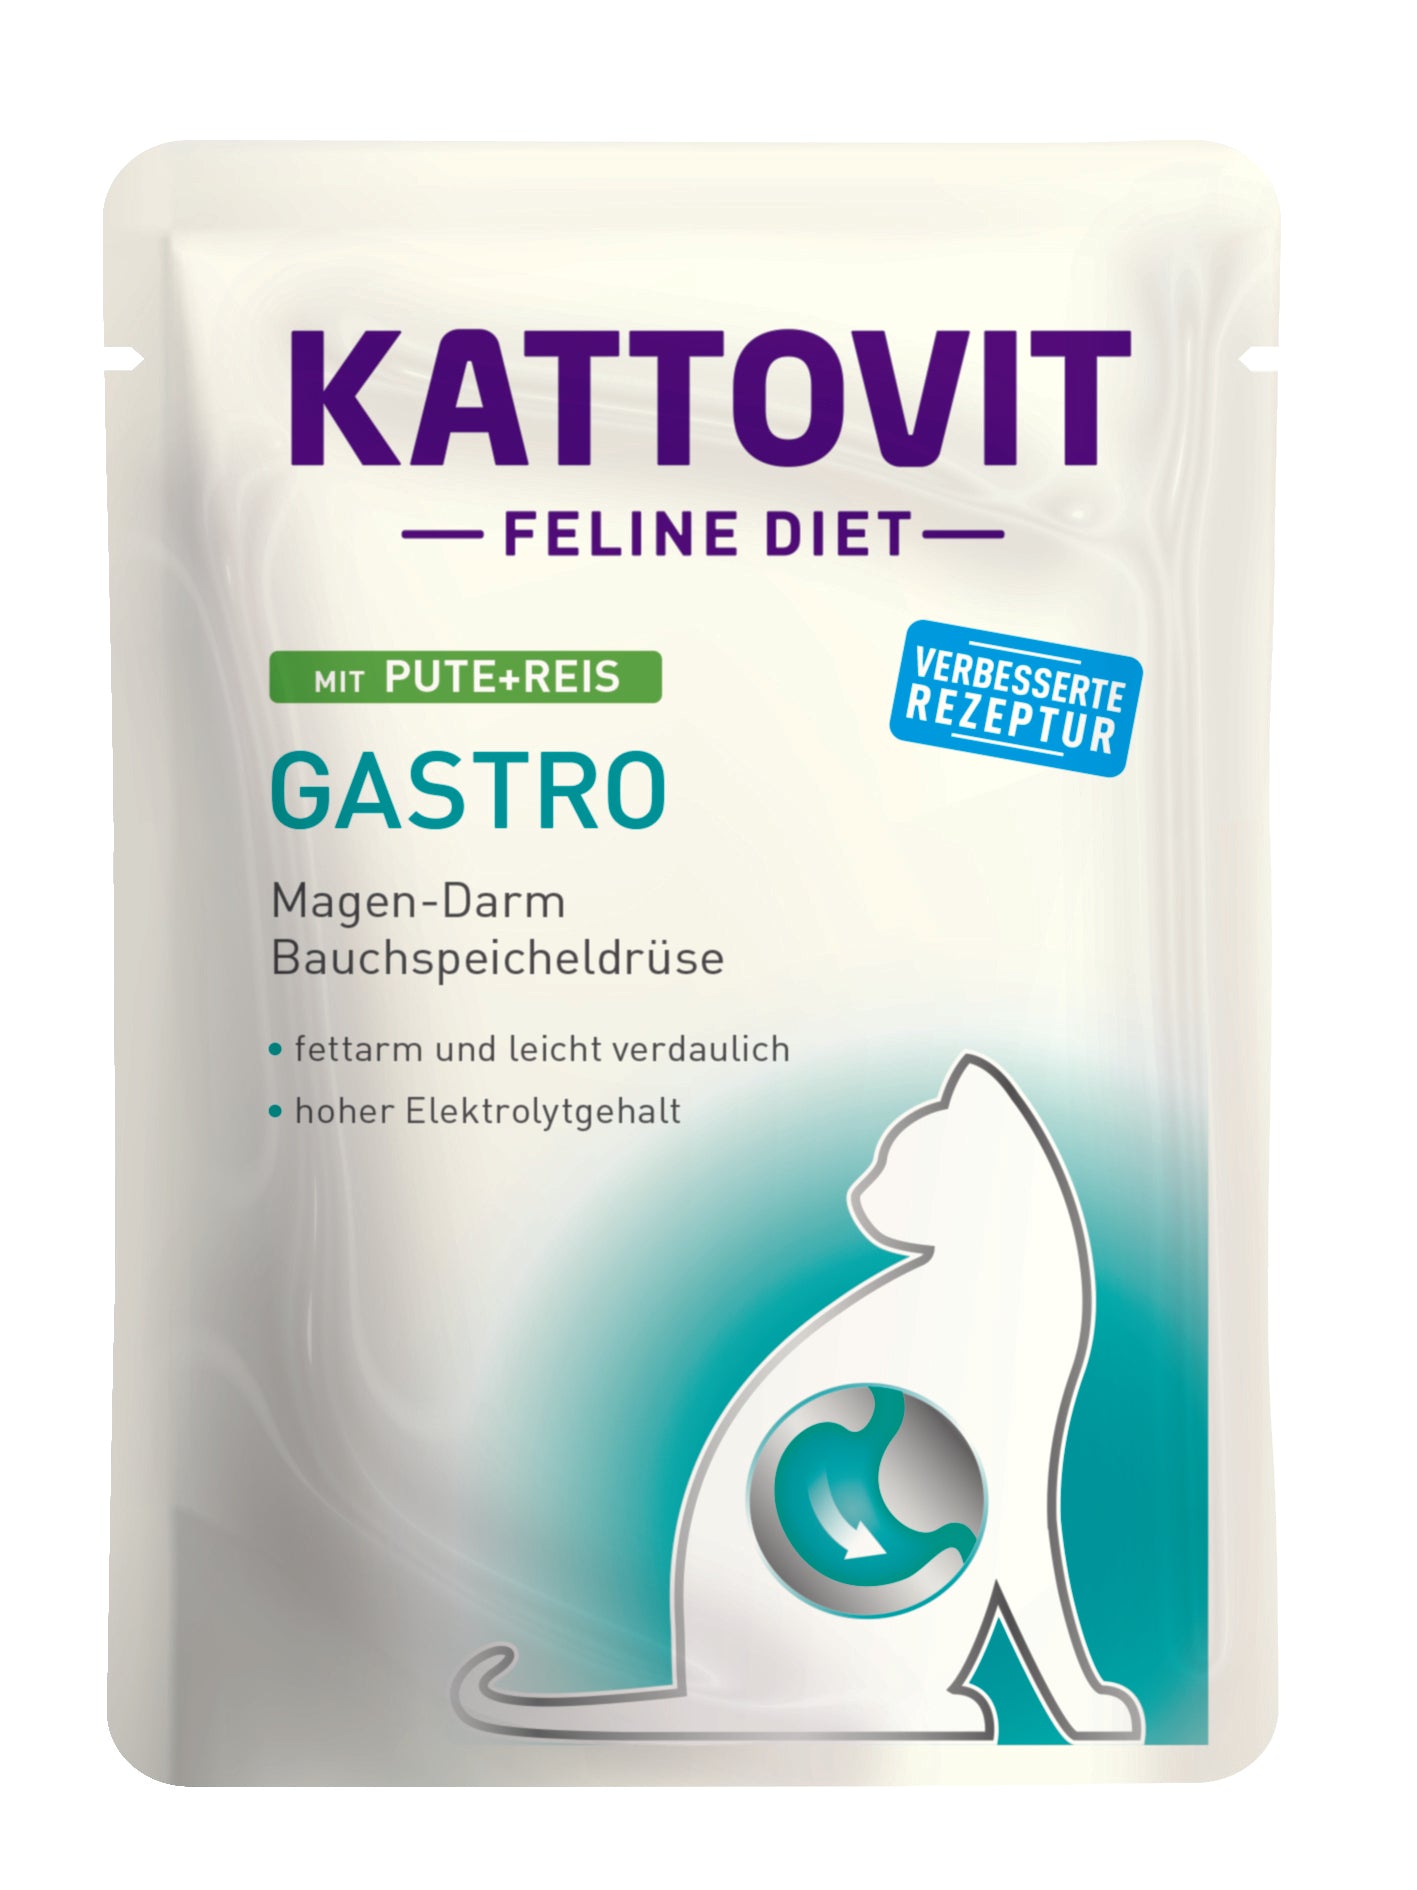 Artikel mit dem Namen Kattovit Feline Diet Gastro Pute + Reis im Shop von zoo.de , dem Onlineshop für nachhaltiges Hundefutter und Katzenfutter.